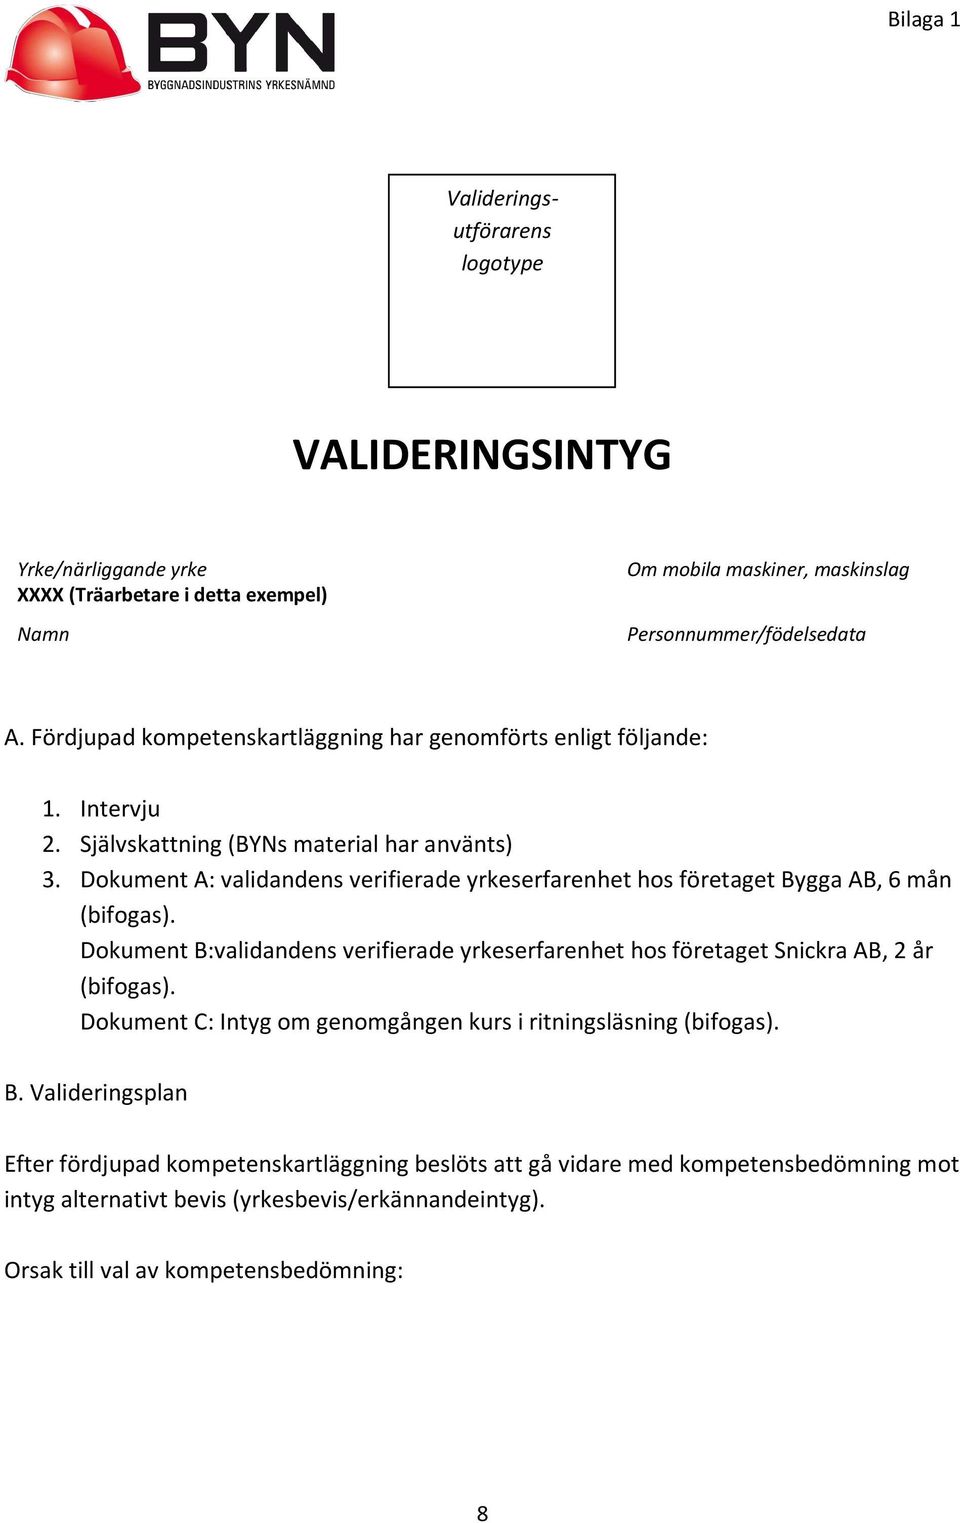 Dokument A: validandens verifierade yrkeserfarenhet hos företaget Bygga AB, 6 mån (bifogas). Dokument B:validandens verifierade yrkeserfarenhet hos företaget Snickra AB, 2 år (bifogas).